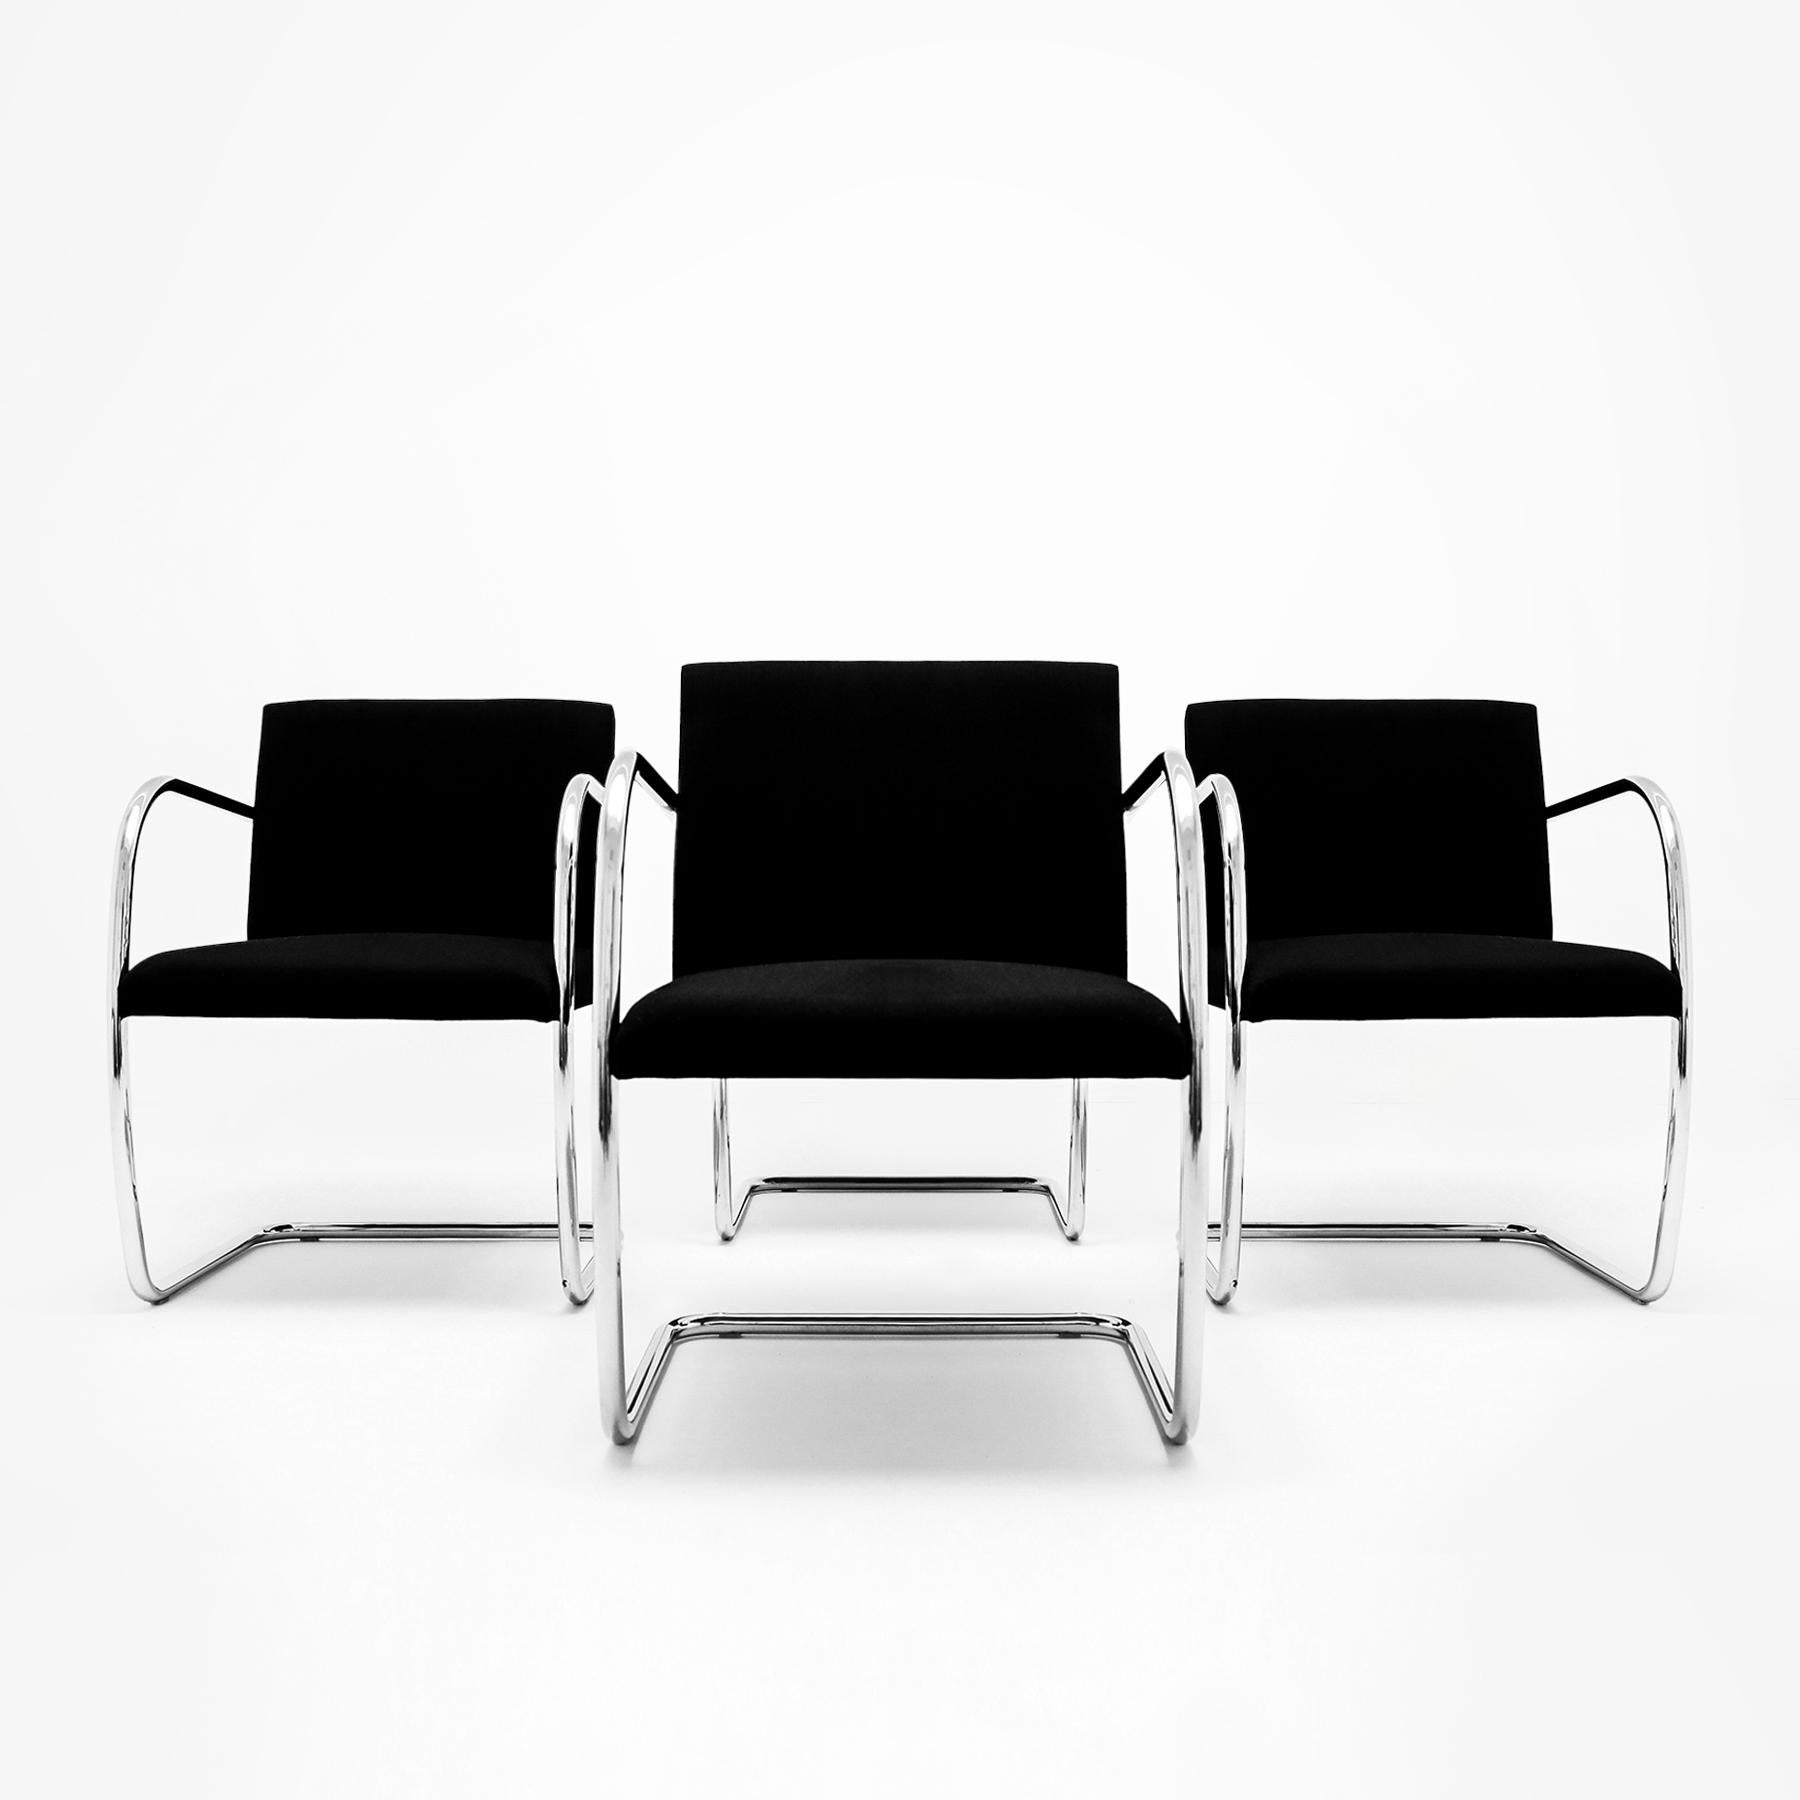 Ensemble de 4 chaises de salle à manger vintage Mies van der Rohe Knoll, MR50 BRNO en tube chromé et tissu noir. Le prix indiqué est pour les 4 chaises telles que montrées.

Conçue par Ludwig Mies van der Rohe dans sa maison Tugendhat à Brno, en